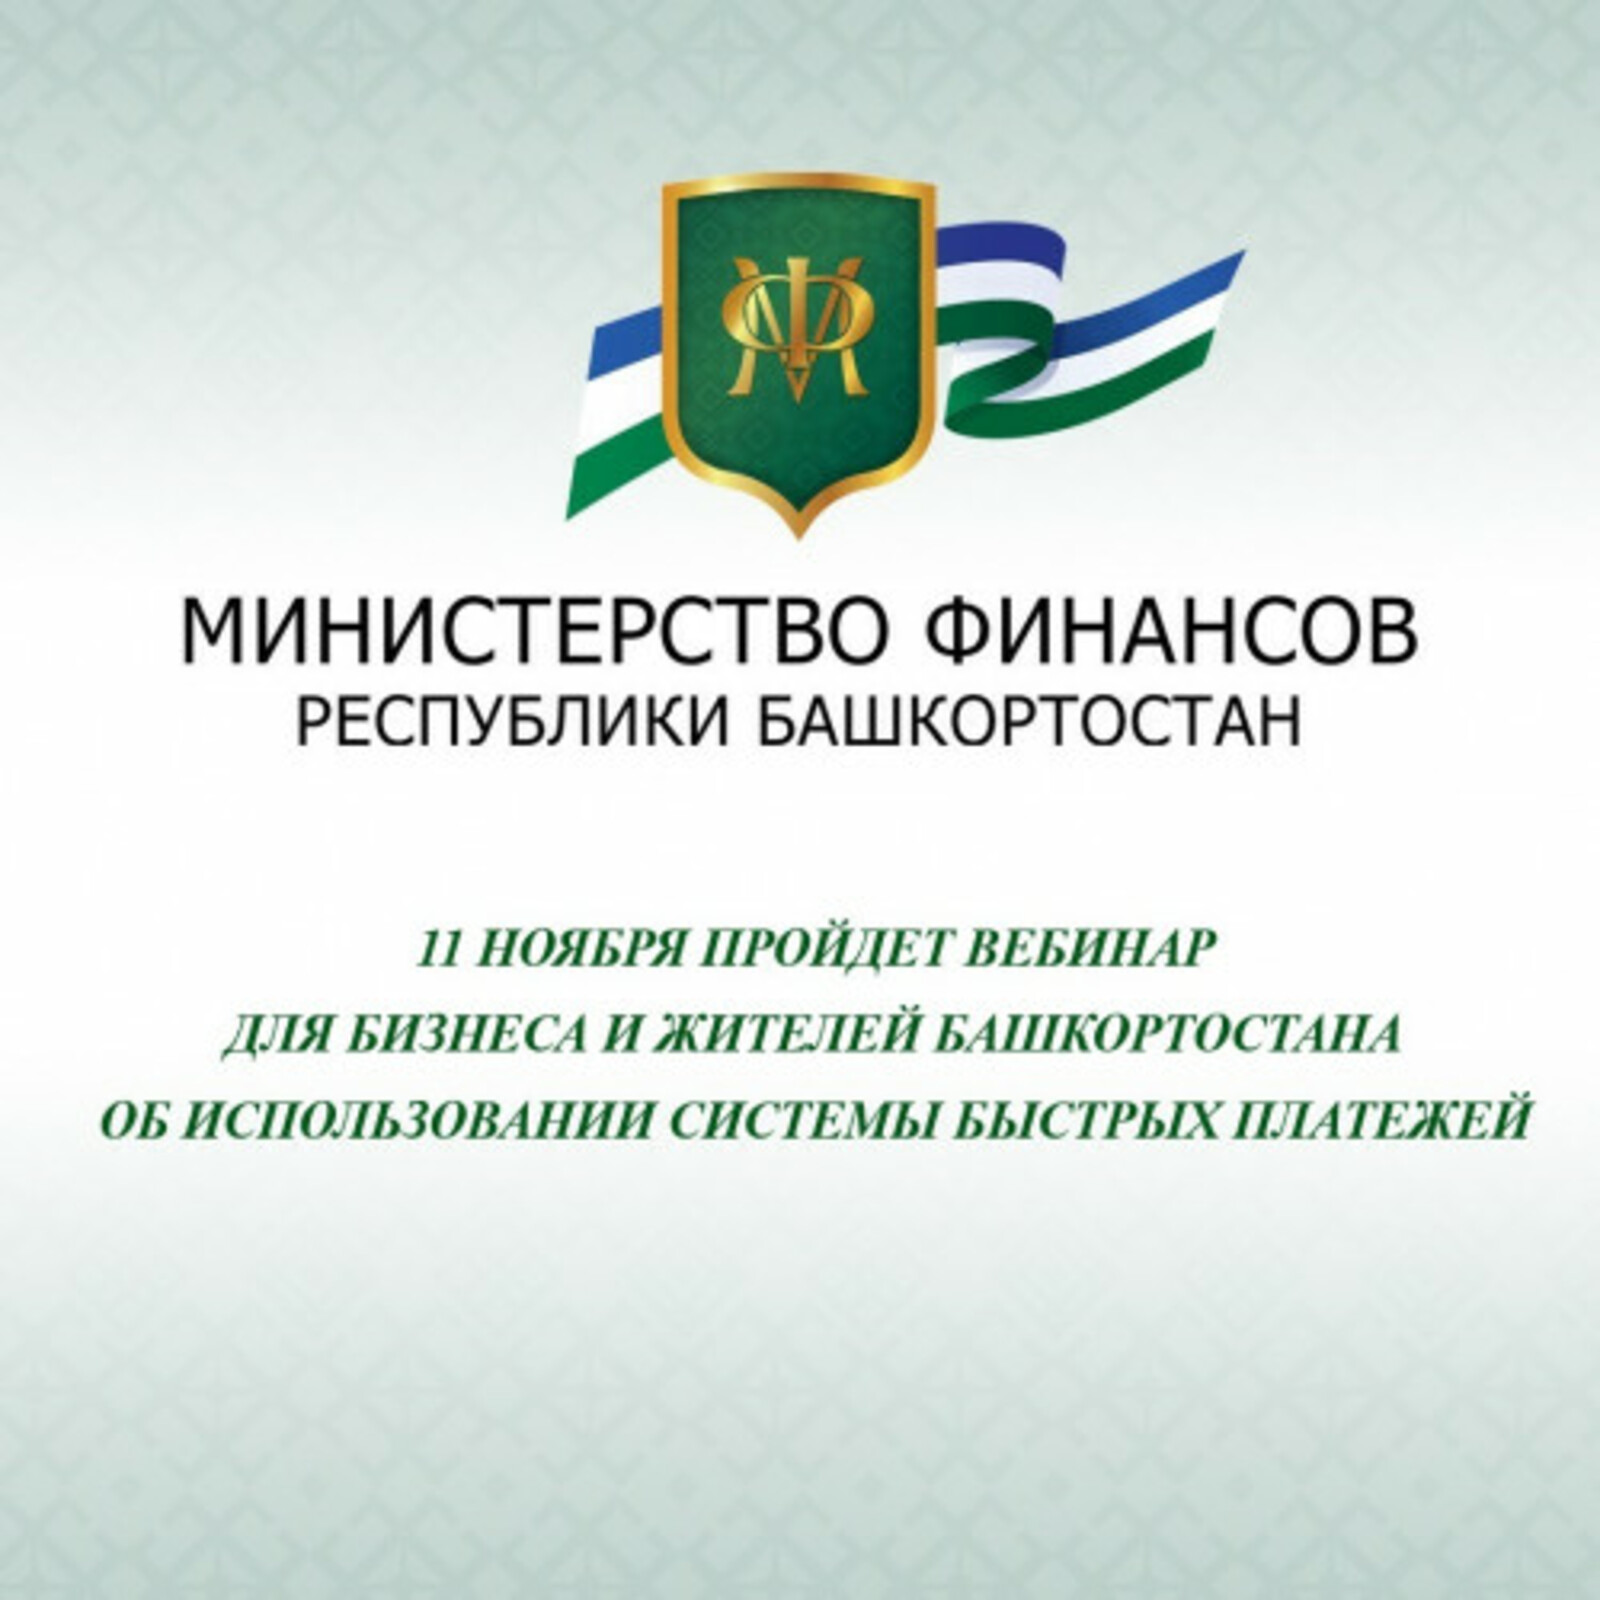 11 ноября пройдет вебинар для бизнеса и жителей Башкортостана об использовании Системы быстрых платежей